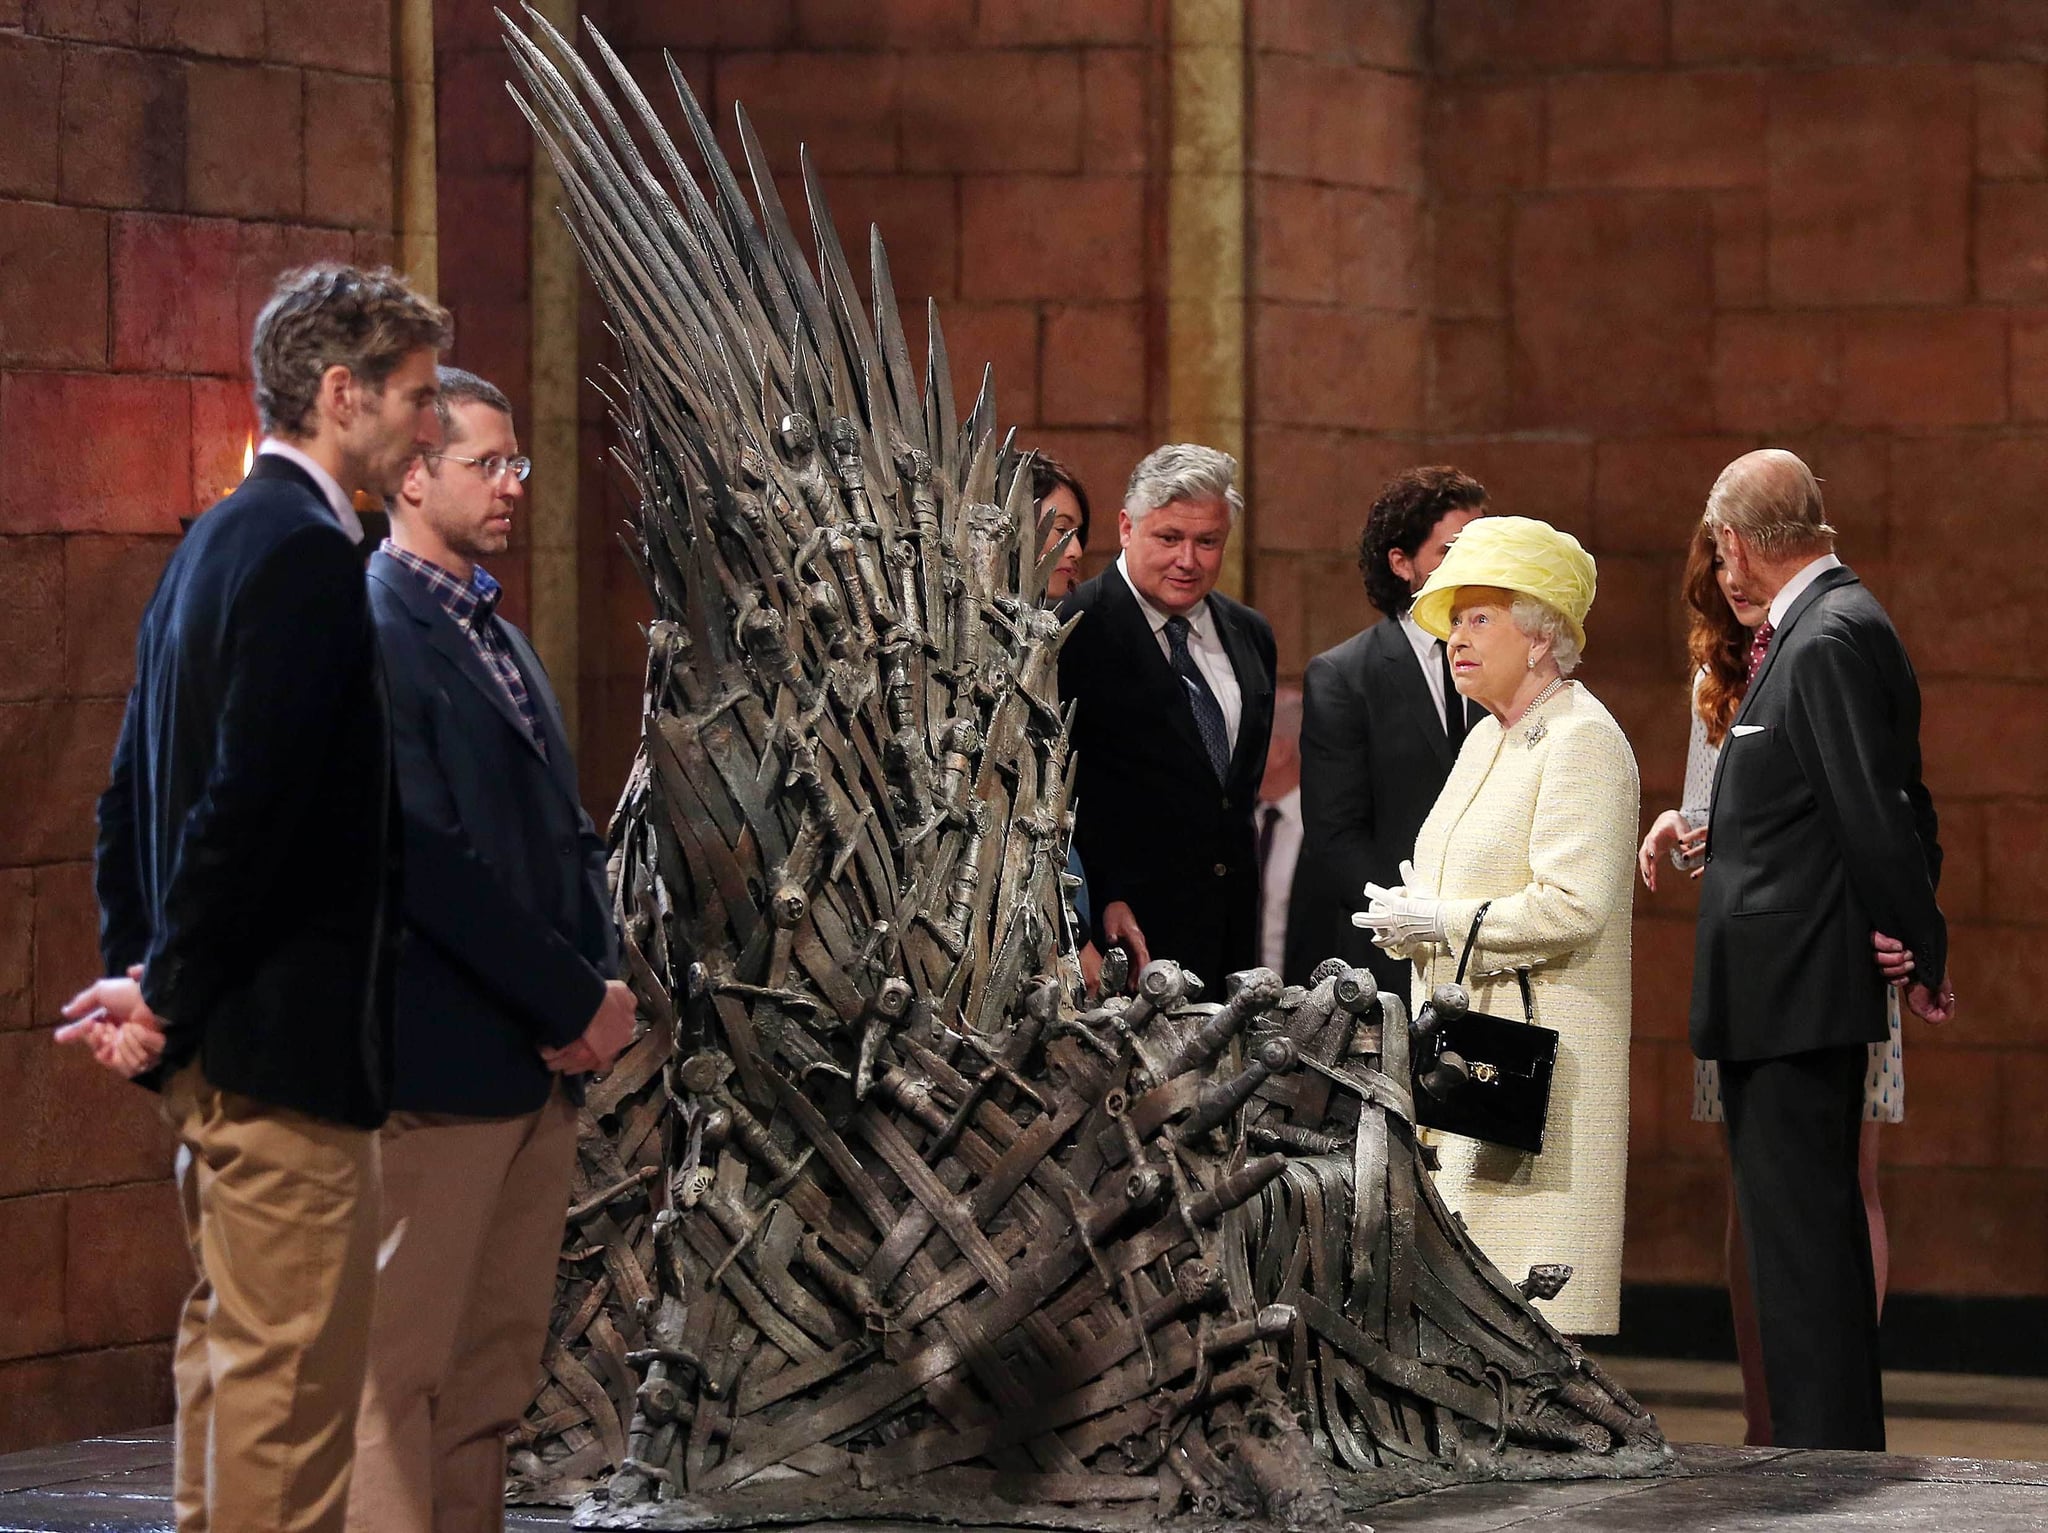 Queen Elizabeth II visits the "Game of Thrones" set in 2014